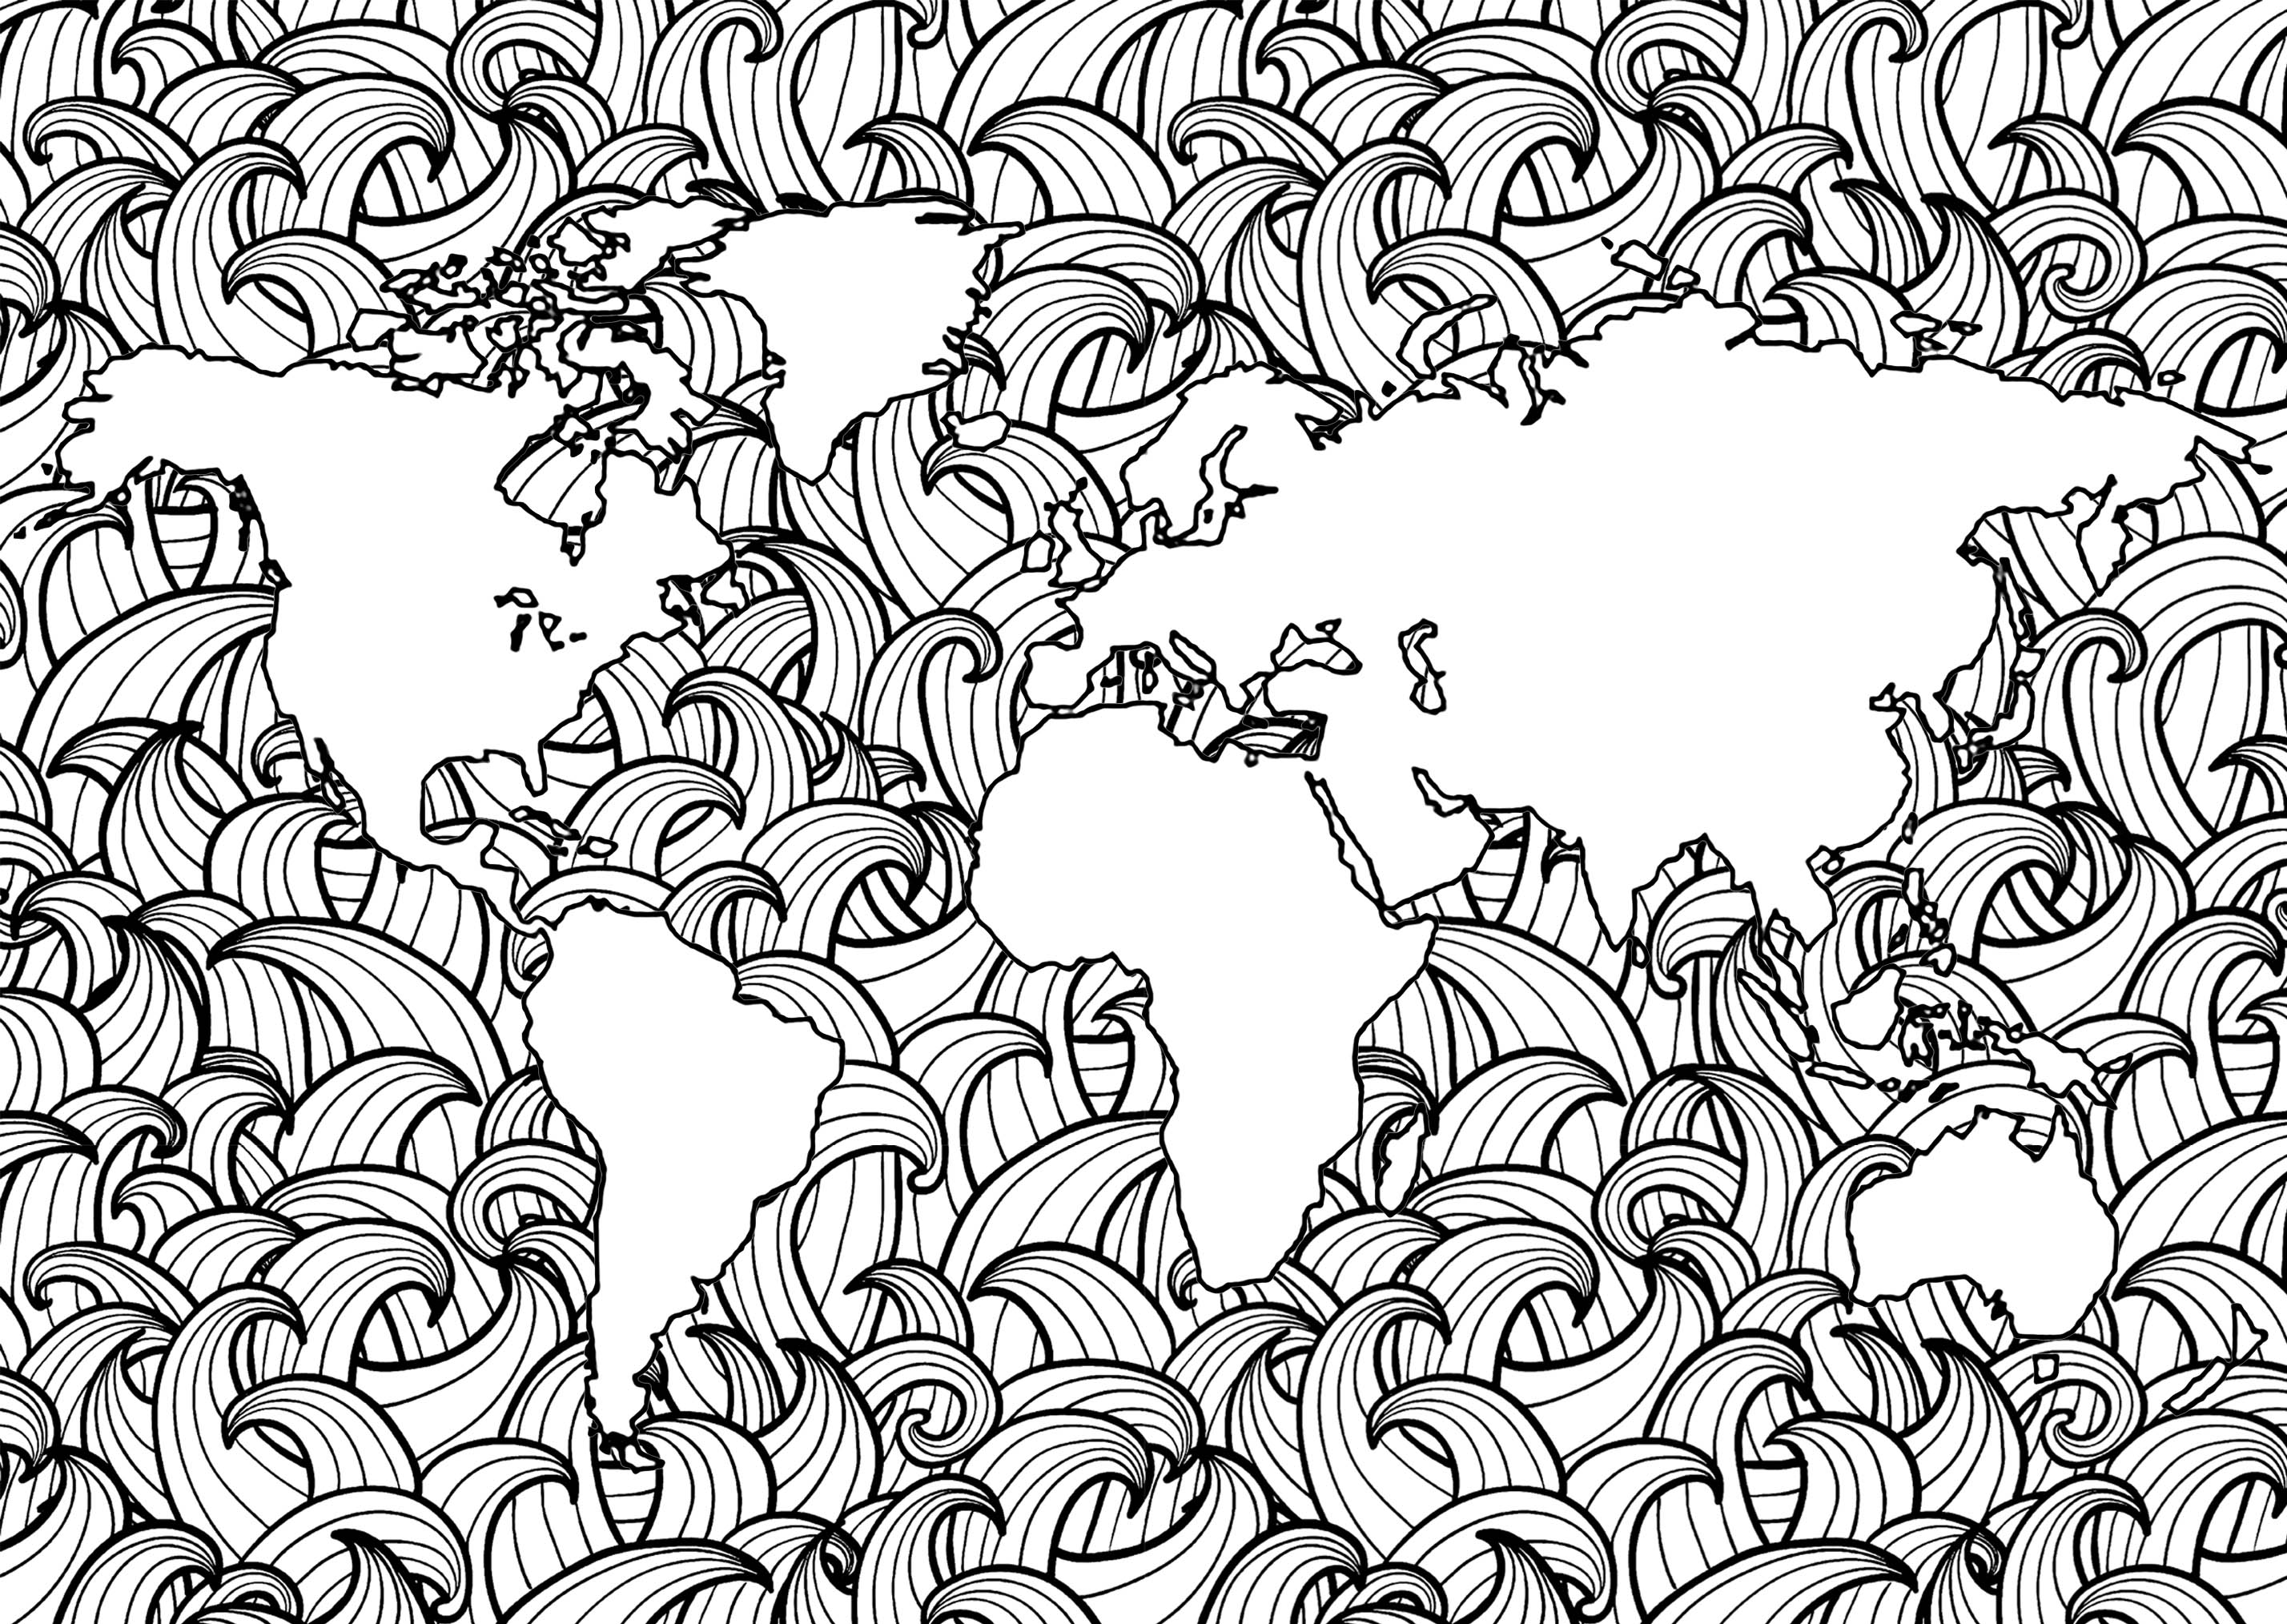 Planeta Tierra con complejos patrones de olas en los mares, Artista : Art'Isabelle